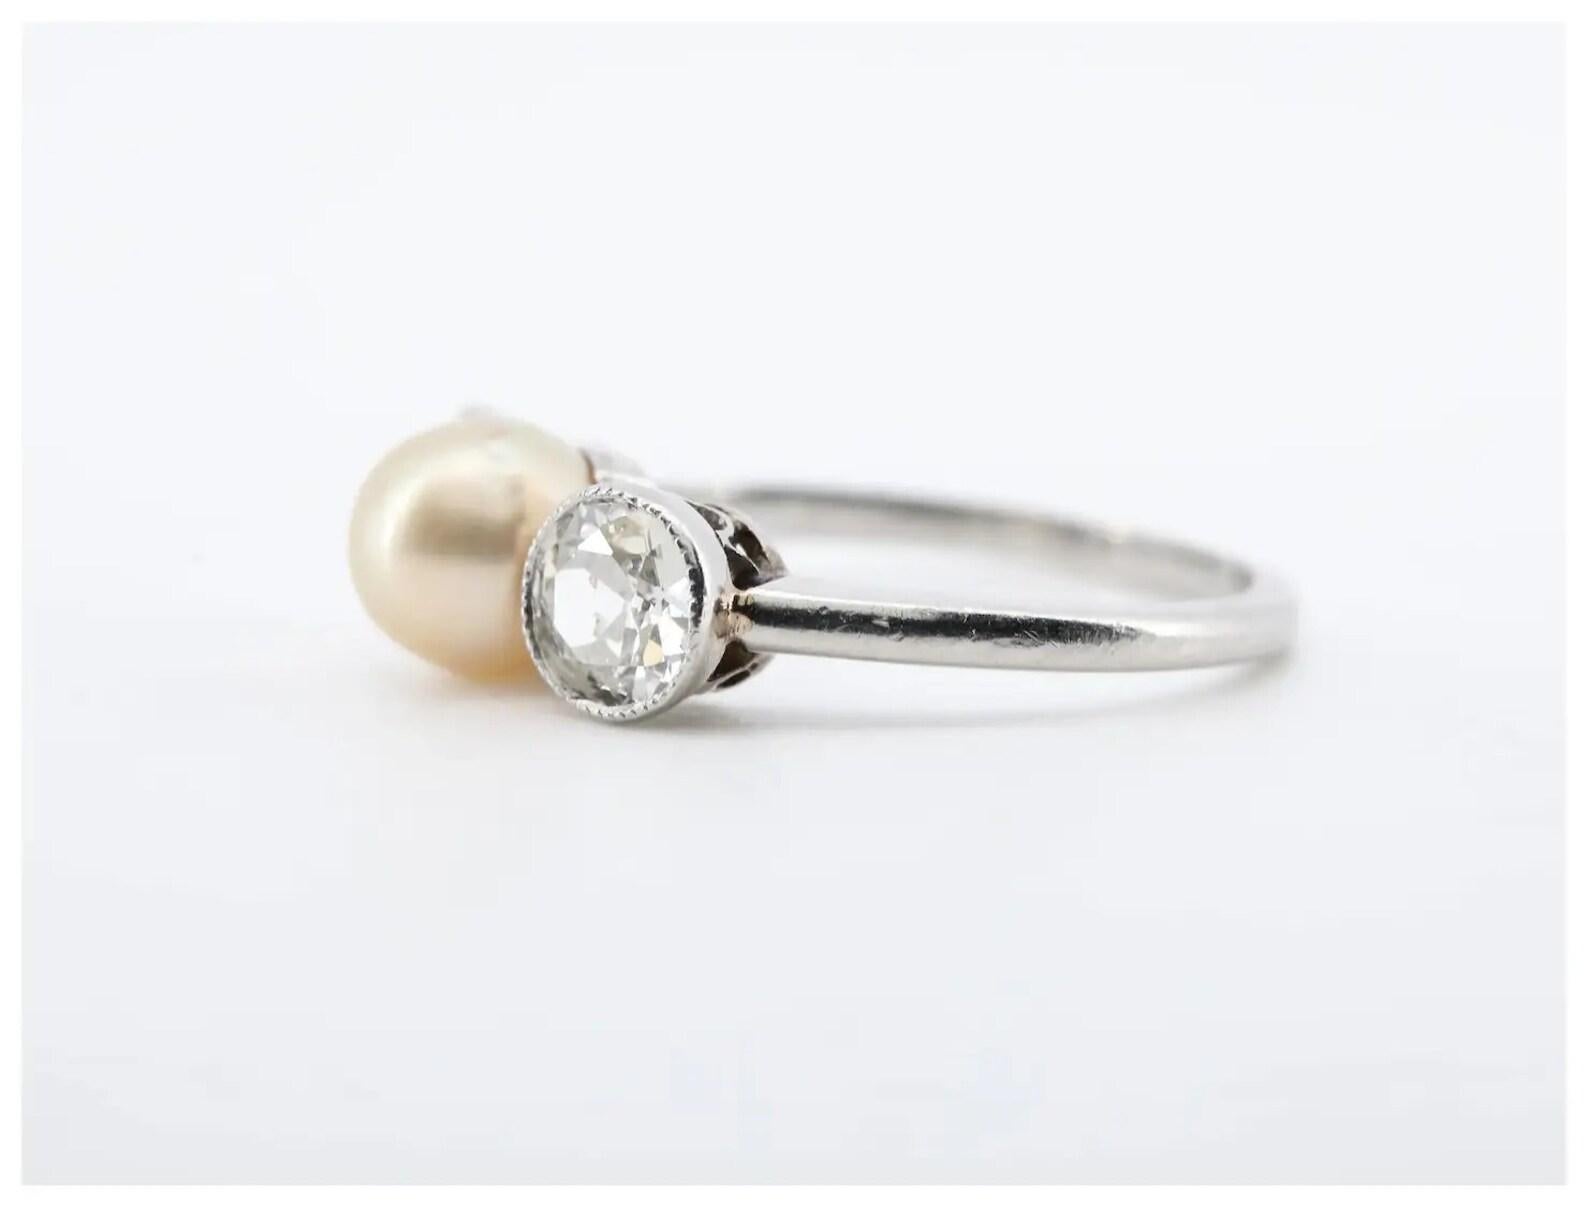 Ein Ring aus Platin mit einer natürlichen Perle und einem Diamanten im alten europäischen Schliff aus der Edwardianischen Zeit.

In der Mitte befindet sich eine natürliche Salzwasserperle mit einem Durchmesser von 6 mm und einer schönen schillernden